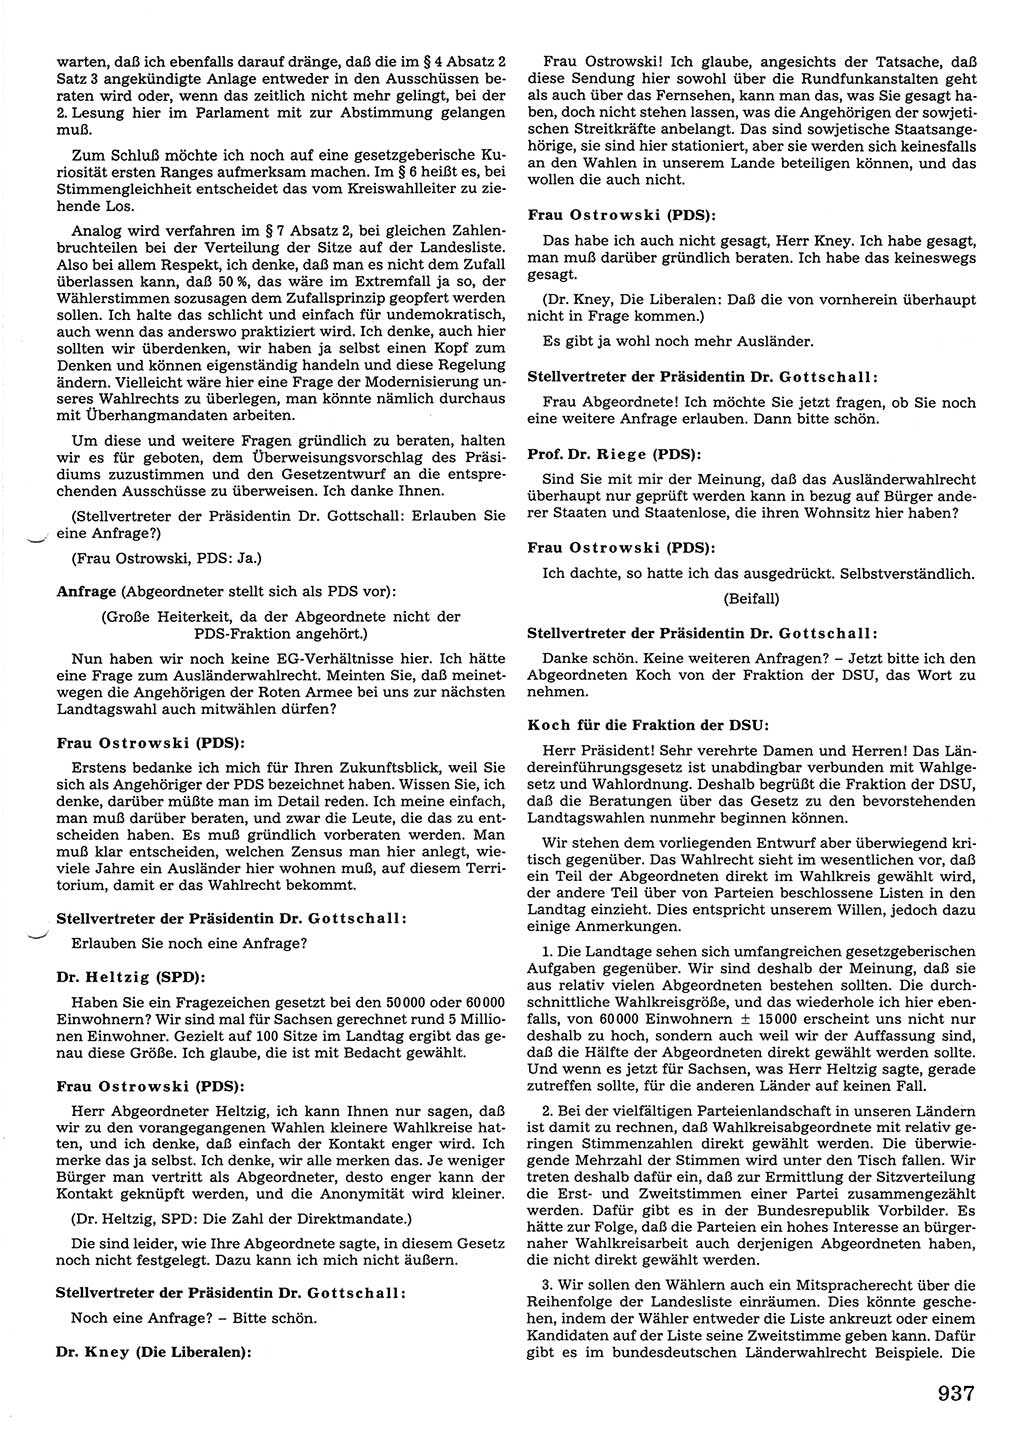 Tagungen der Volkskammer (VK) der Deutschen Demokratischen Republik (DDR), 10. Wahlperiode 1990, Seite 937 (VK. DDR 10. WP. 1990, Prot. Tg. 1-38, 5.4.-2.10.1990, S. 937)